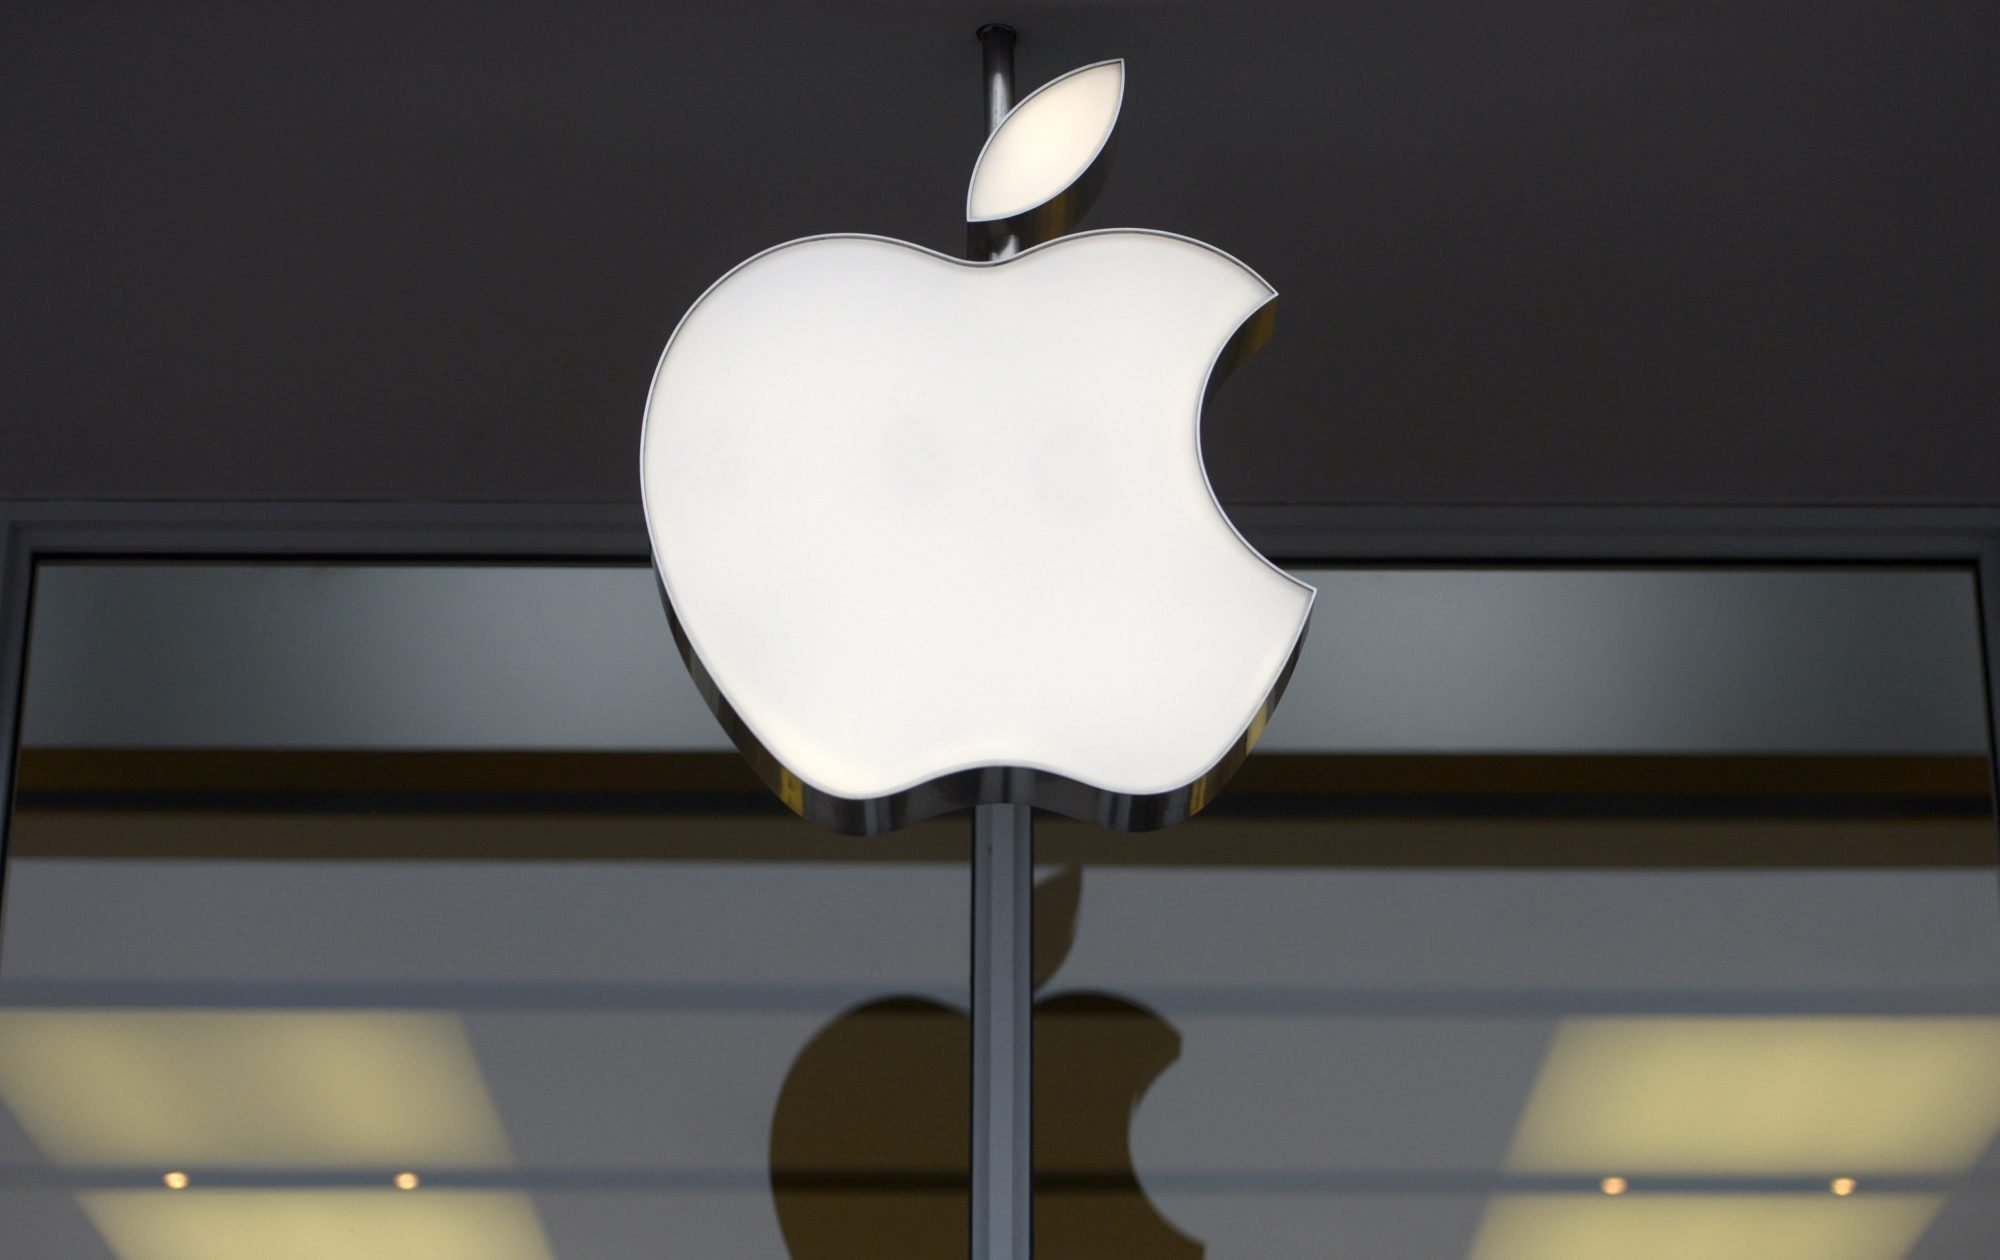 De acordo com a agência oficial Tass, a Apple discorda da decisão das autoridades russas e vai recorrer no devido tempo